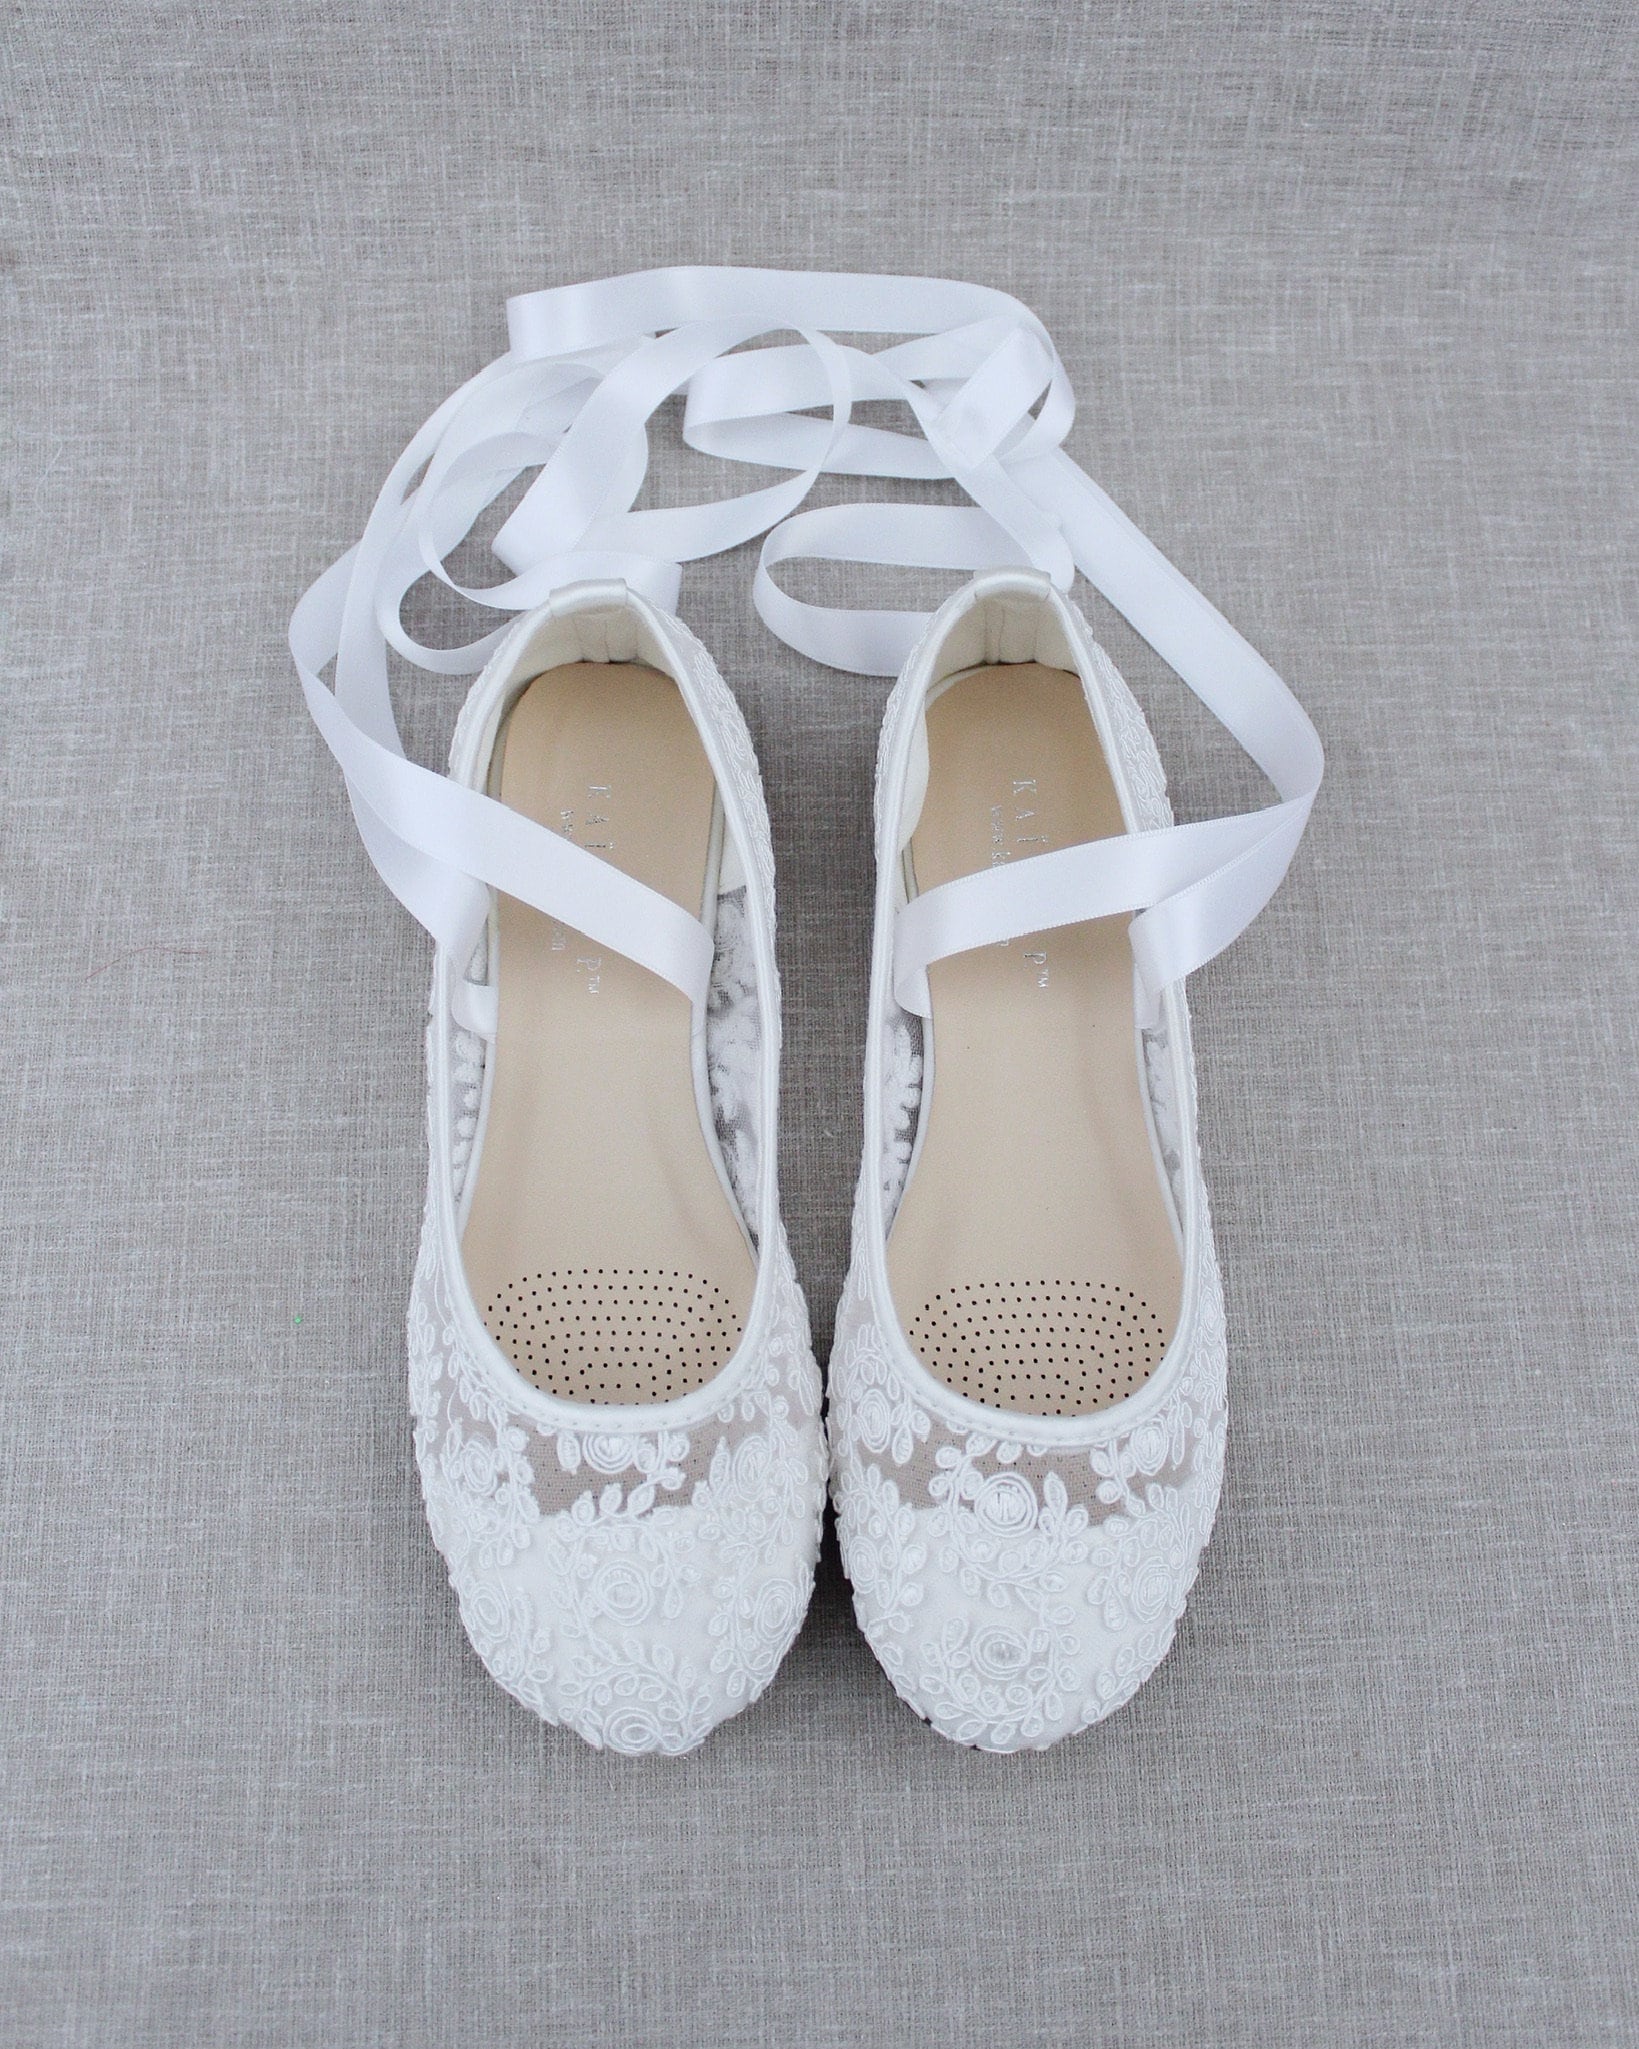 Women Wedding Shoes White Lace Round Toe BALLERINA Lace up - Etsy UK